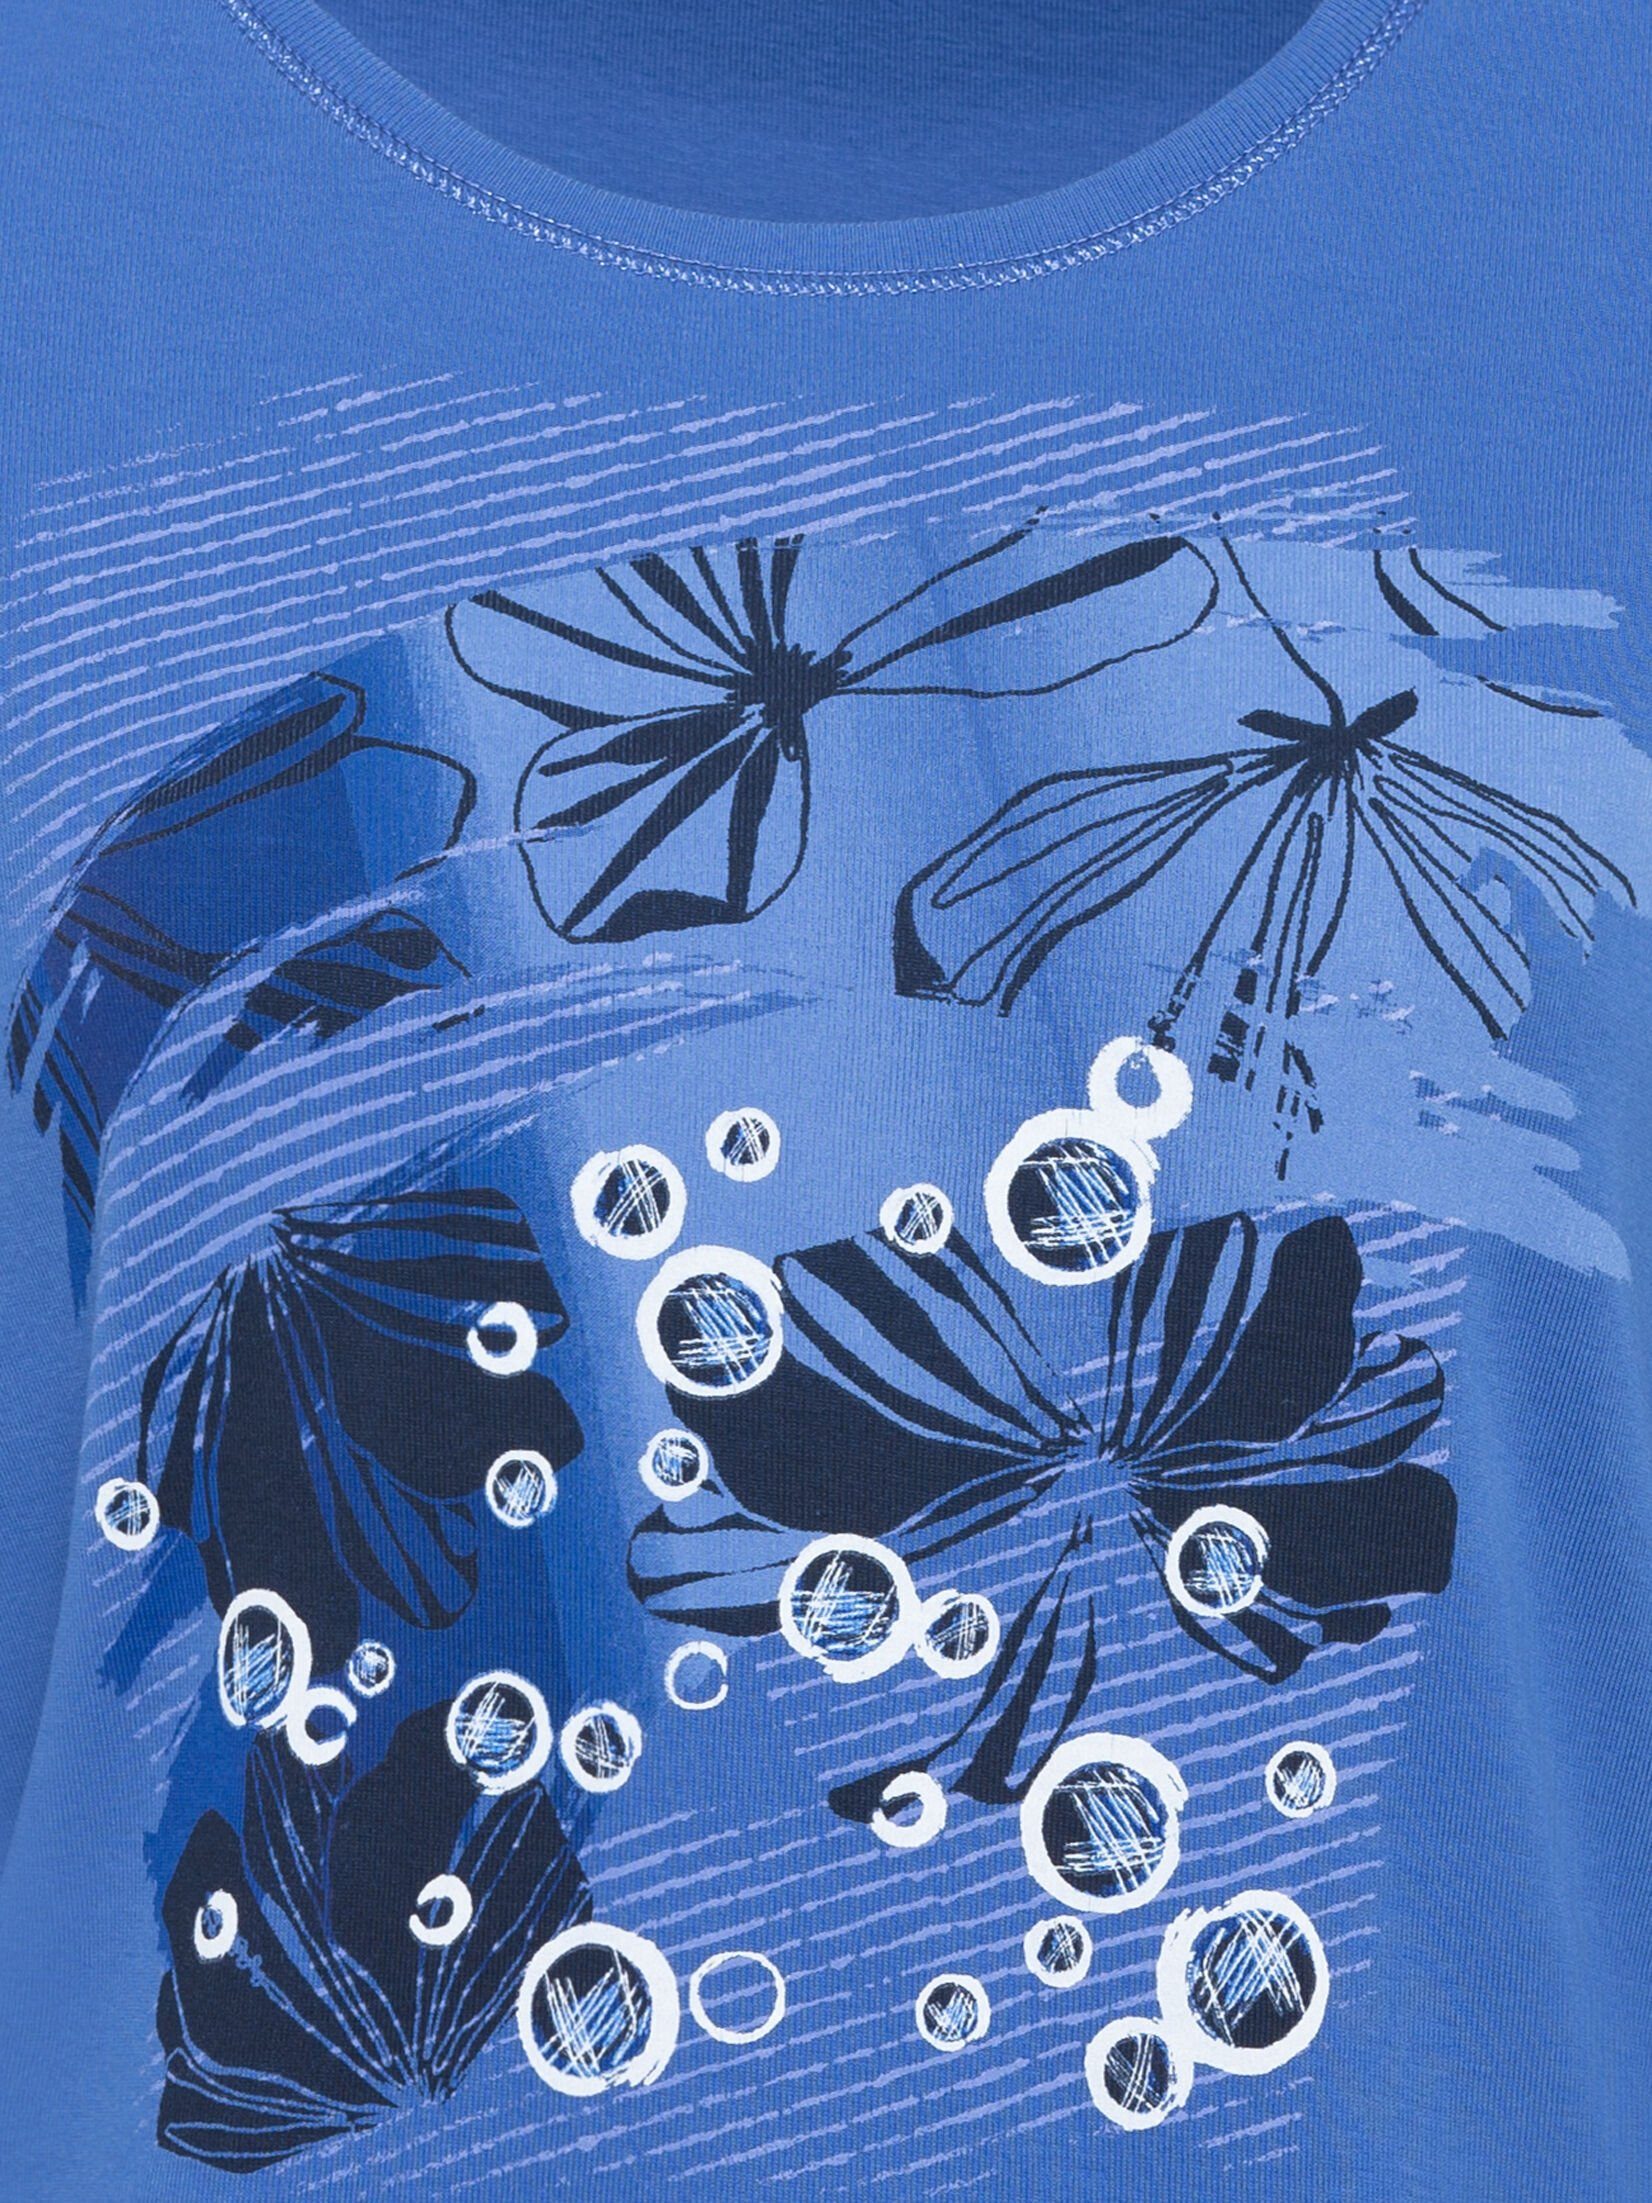 Olsen Rundhalsshirt mit Placement-Print Electric Blue phantasievollen